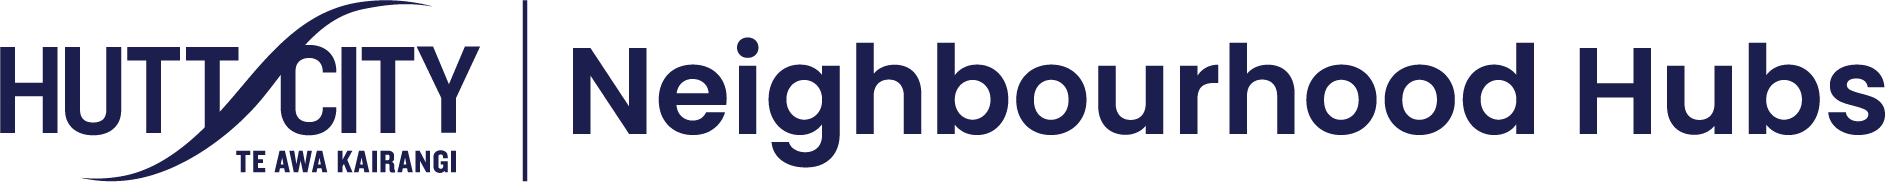 Hutt City Neighborhood Hubs Logo